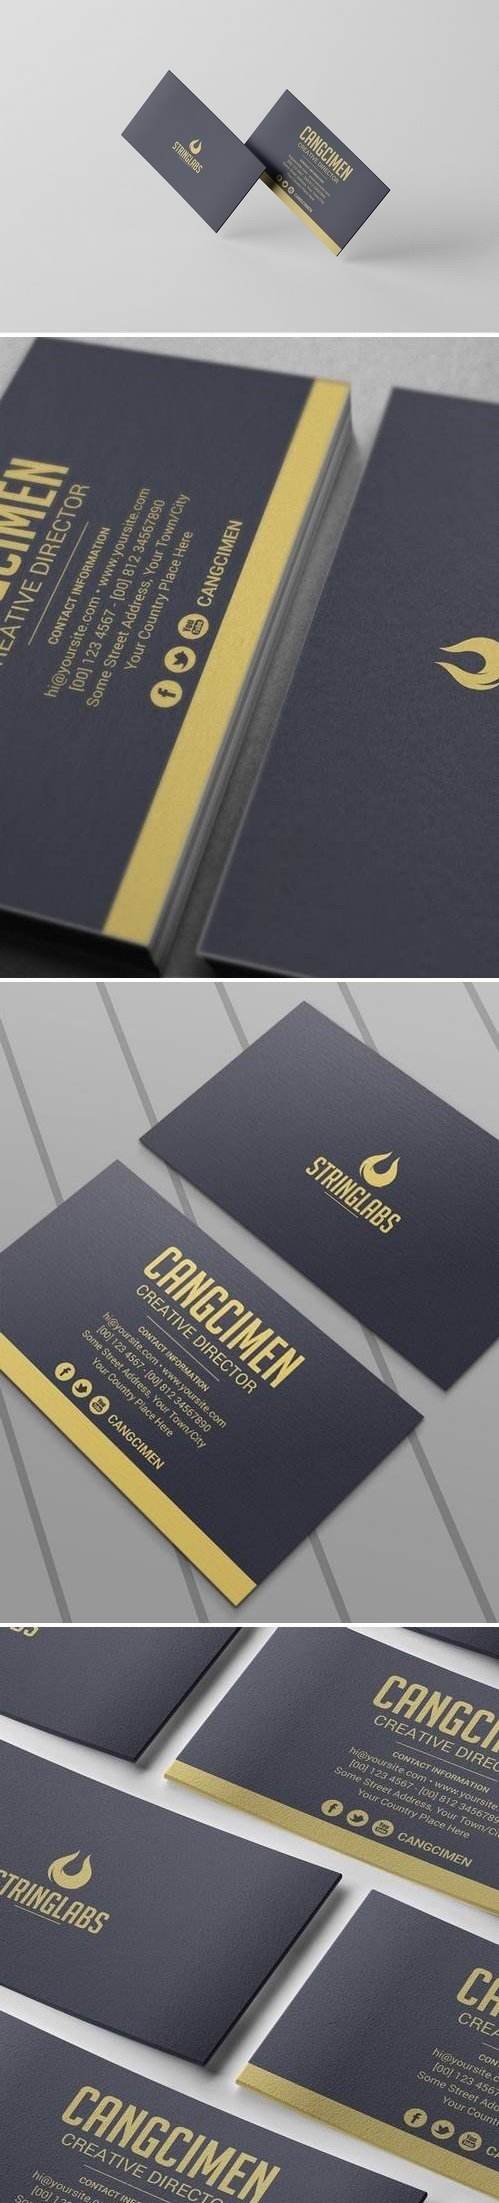 Golden - Business Card Template